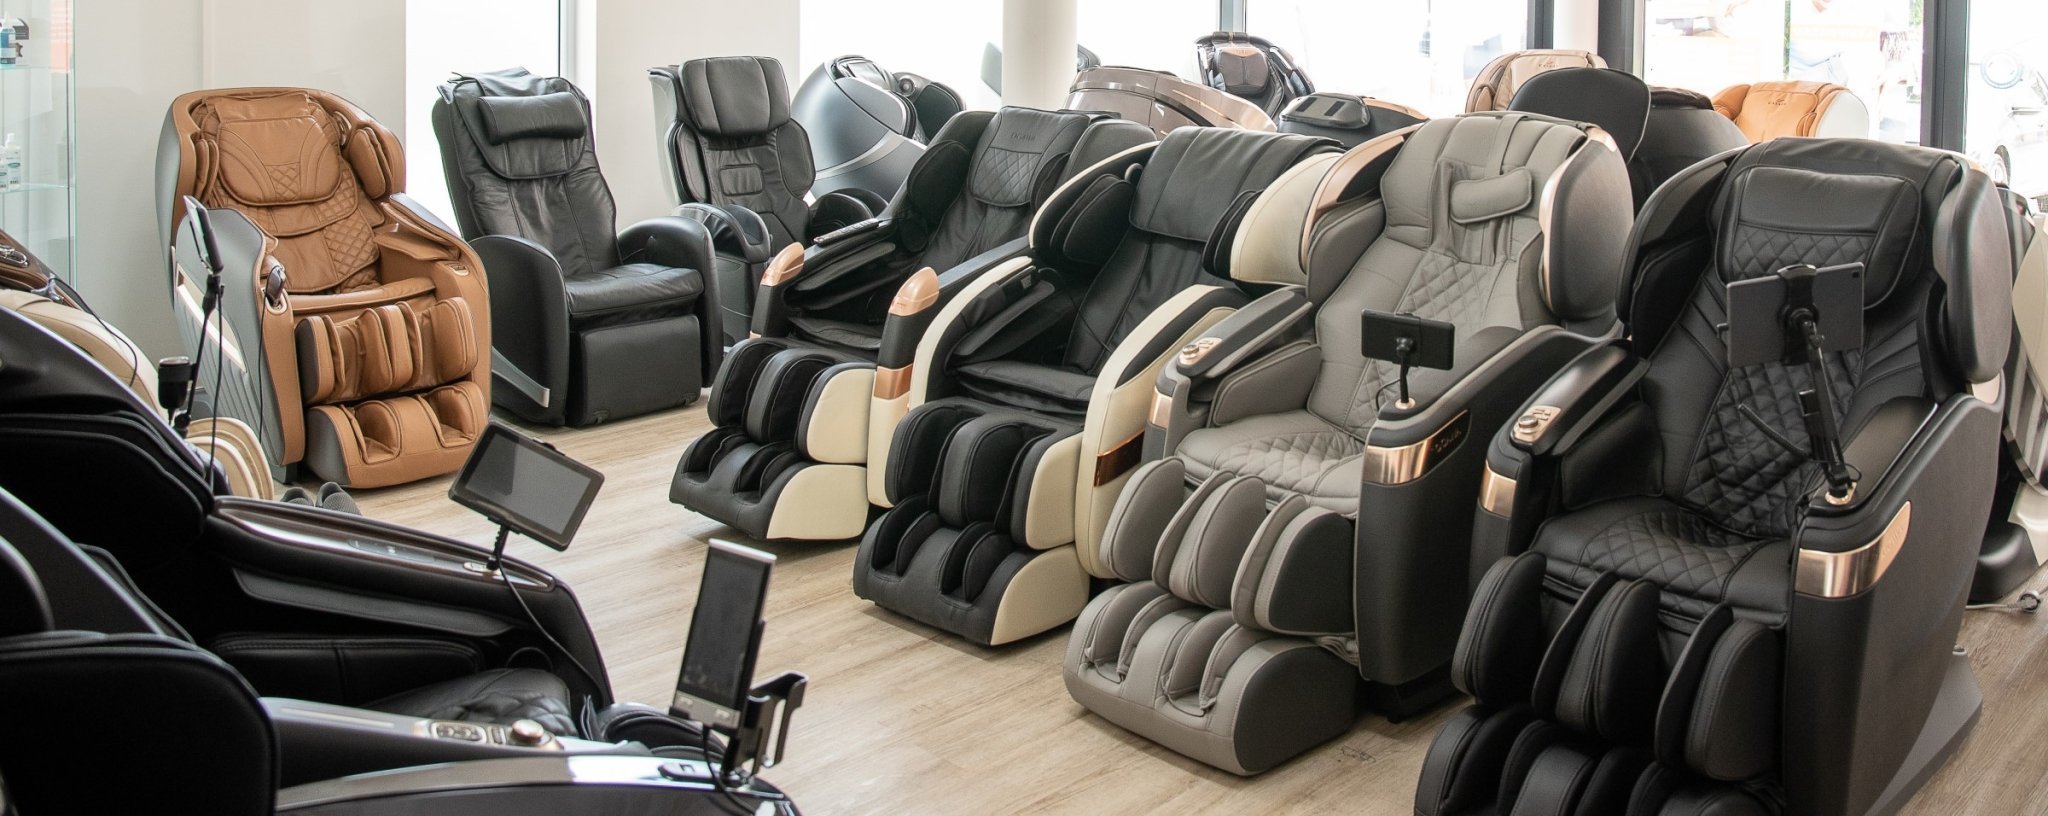 Exposiciones de sillones de masaje - Massage chair world